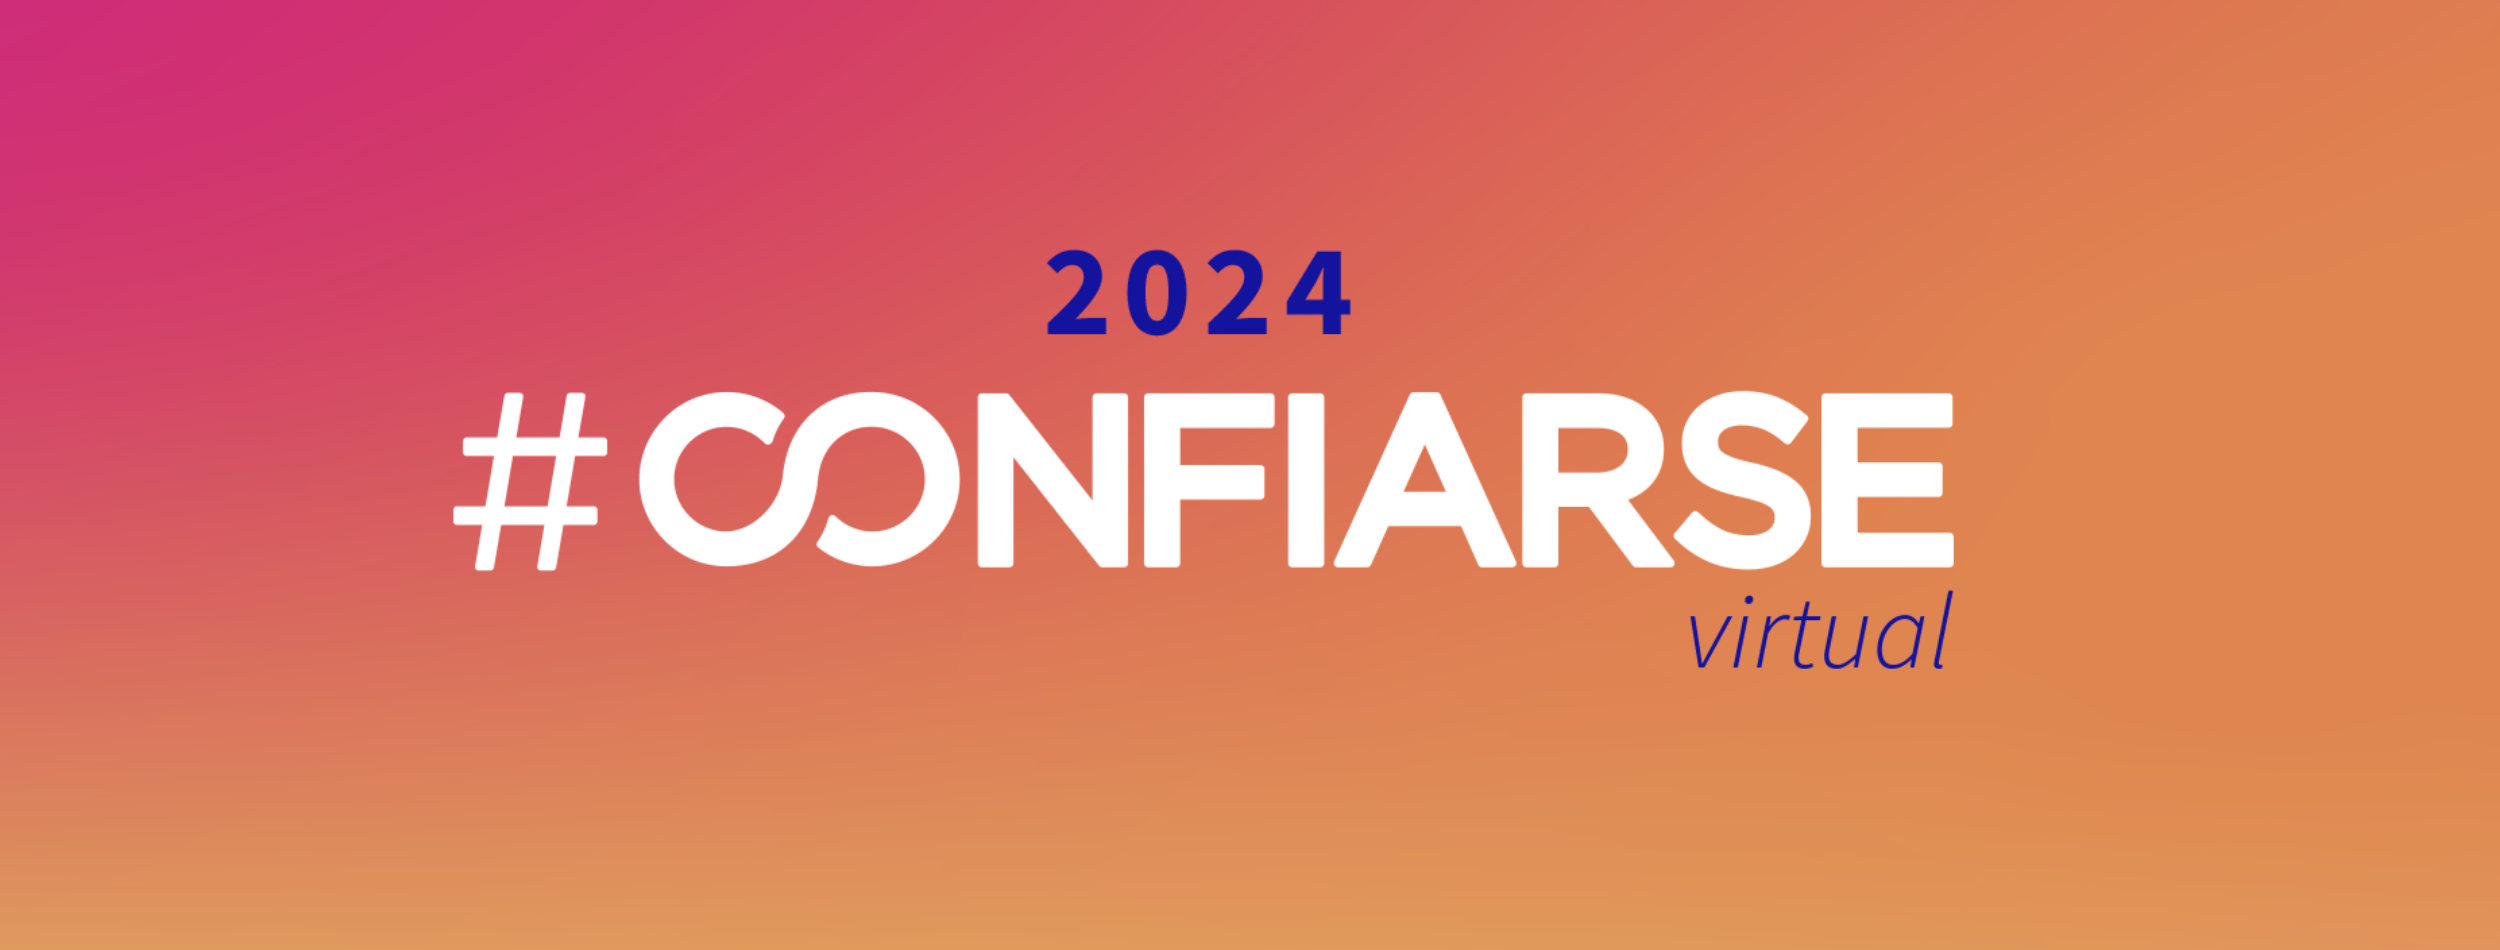 Jornada CONFIARSE 2024 Virtual